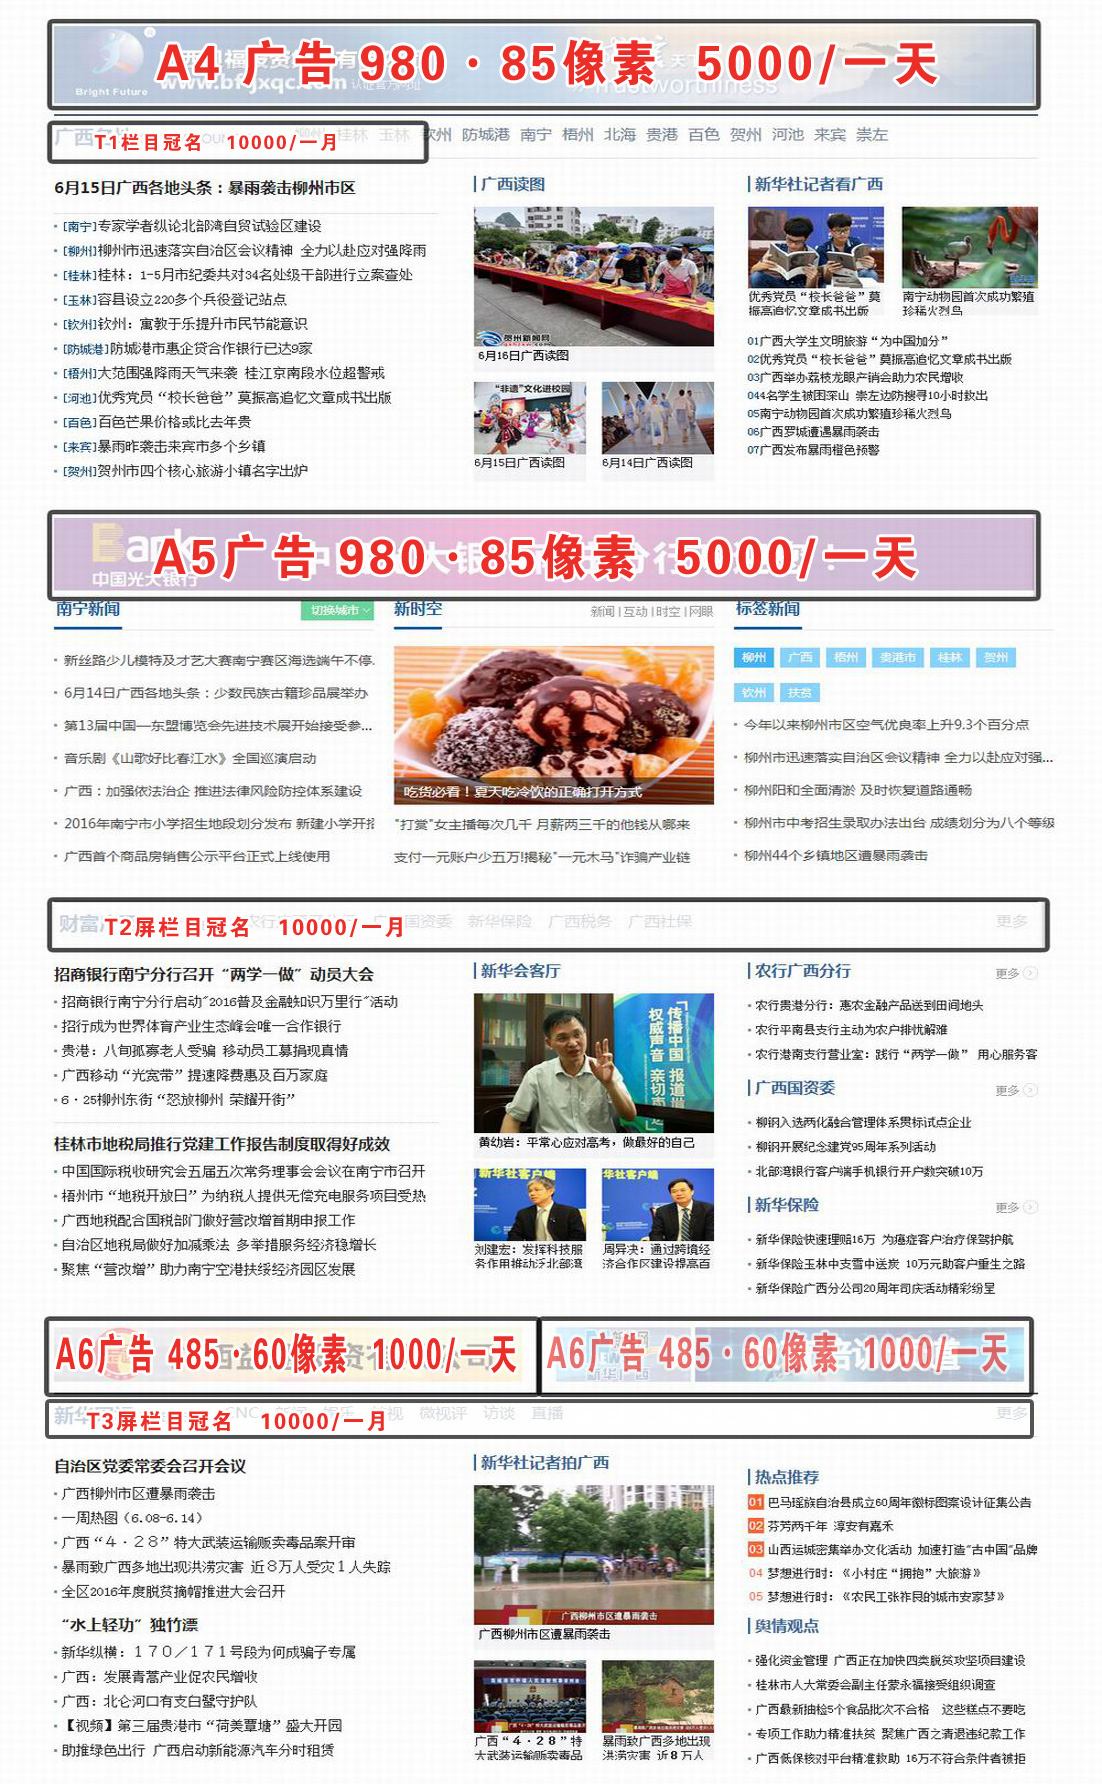 新华网广西频道首页广告位价格展示